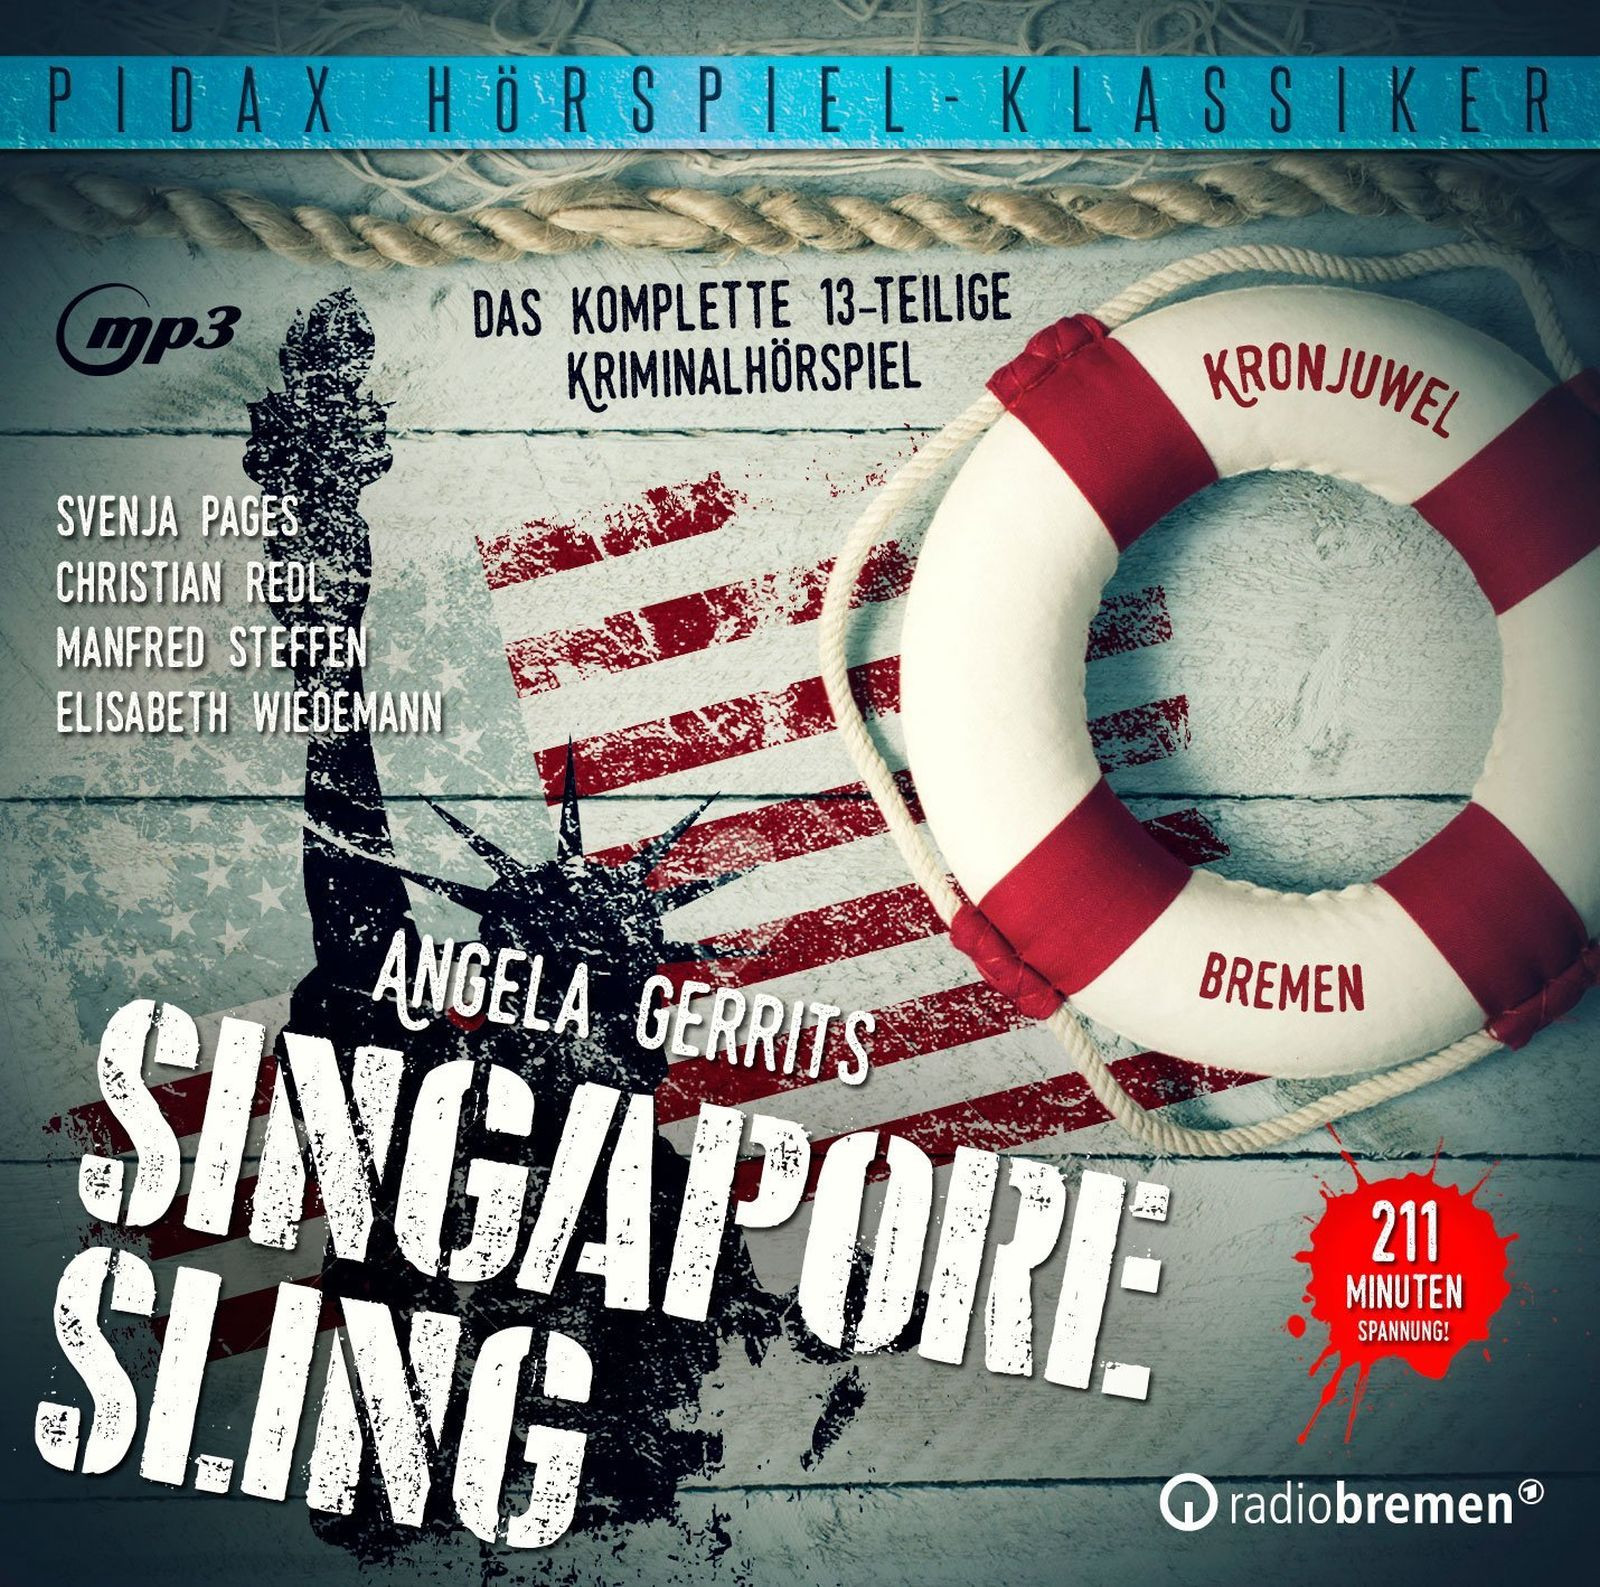 Pidax Hörspiel Klassiker - Singapore Sling